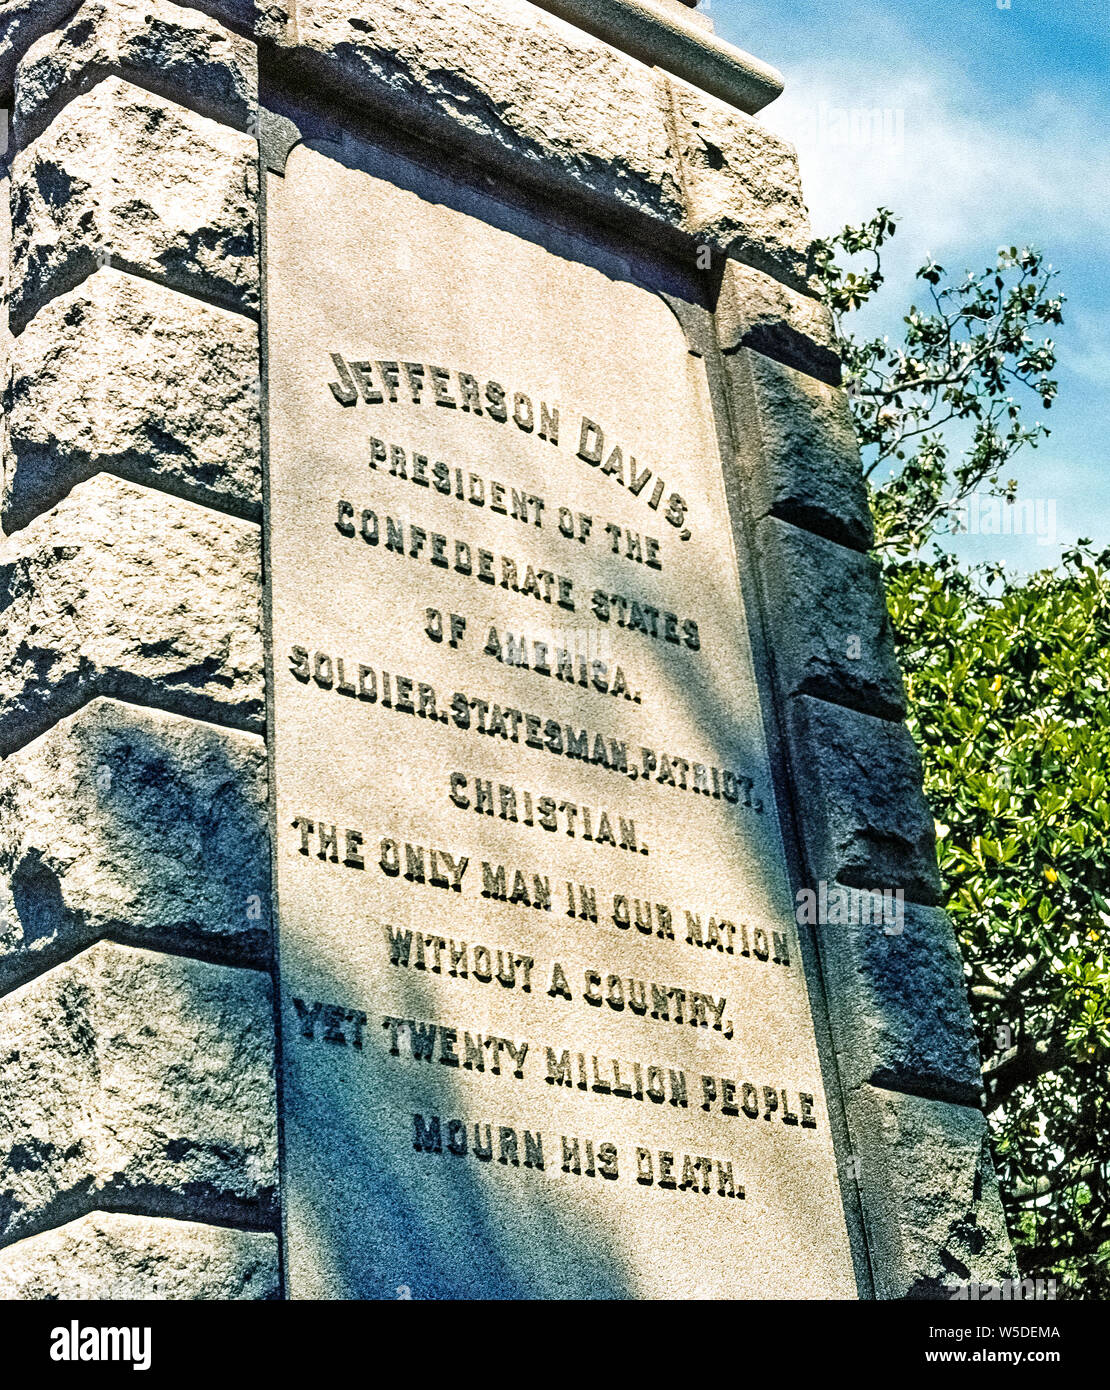 Jefferson Davis, Président des États confédérés d'Amérique, est rappelé avec une inscription sur un monument de granit qui a été érigée en 1891 à la place de Lee, une guerre civile Memorial Park dans le centre-ville de Pensacola, Floride, USA. Décrite ici comme un soldat, homme d'Etat, patriote et chrétien, Davis a été le seul président des Confédérés durant la guerre de Sécession de 1861-1865 et a été capturé par les forces de l'Union peu après ses armées se sont rendus. Après sa mort en 1889, ce monument a été érigé avec l'éloge de Davis : 'le seul homme de notre nation sans pays, encore vingt millions de personnes pleurer sa mort." Banque D'Images